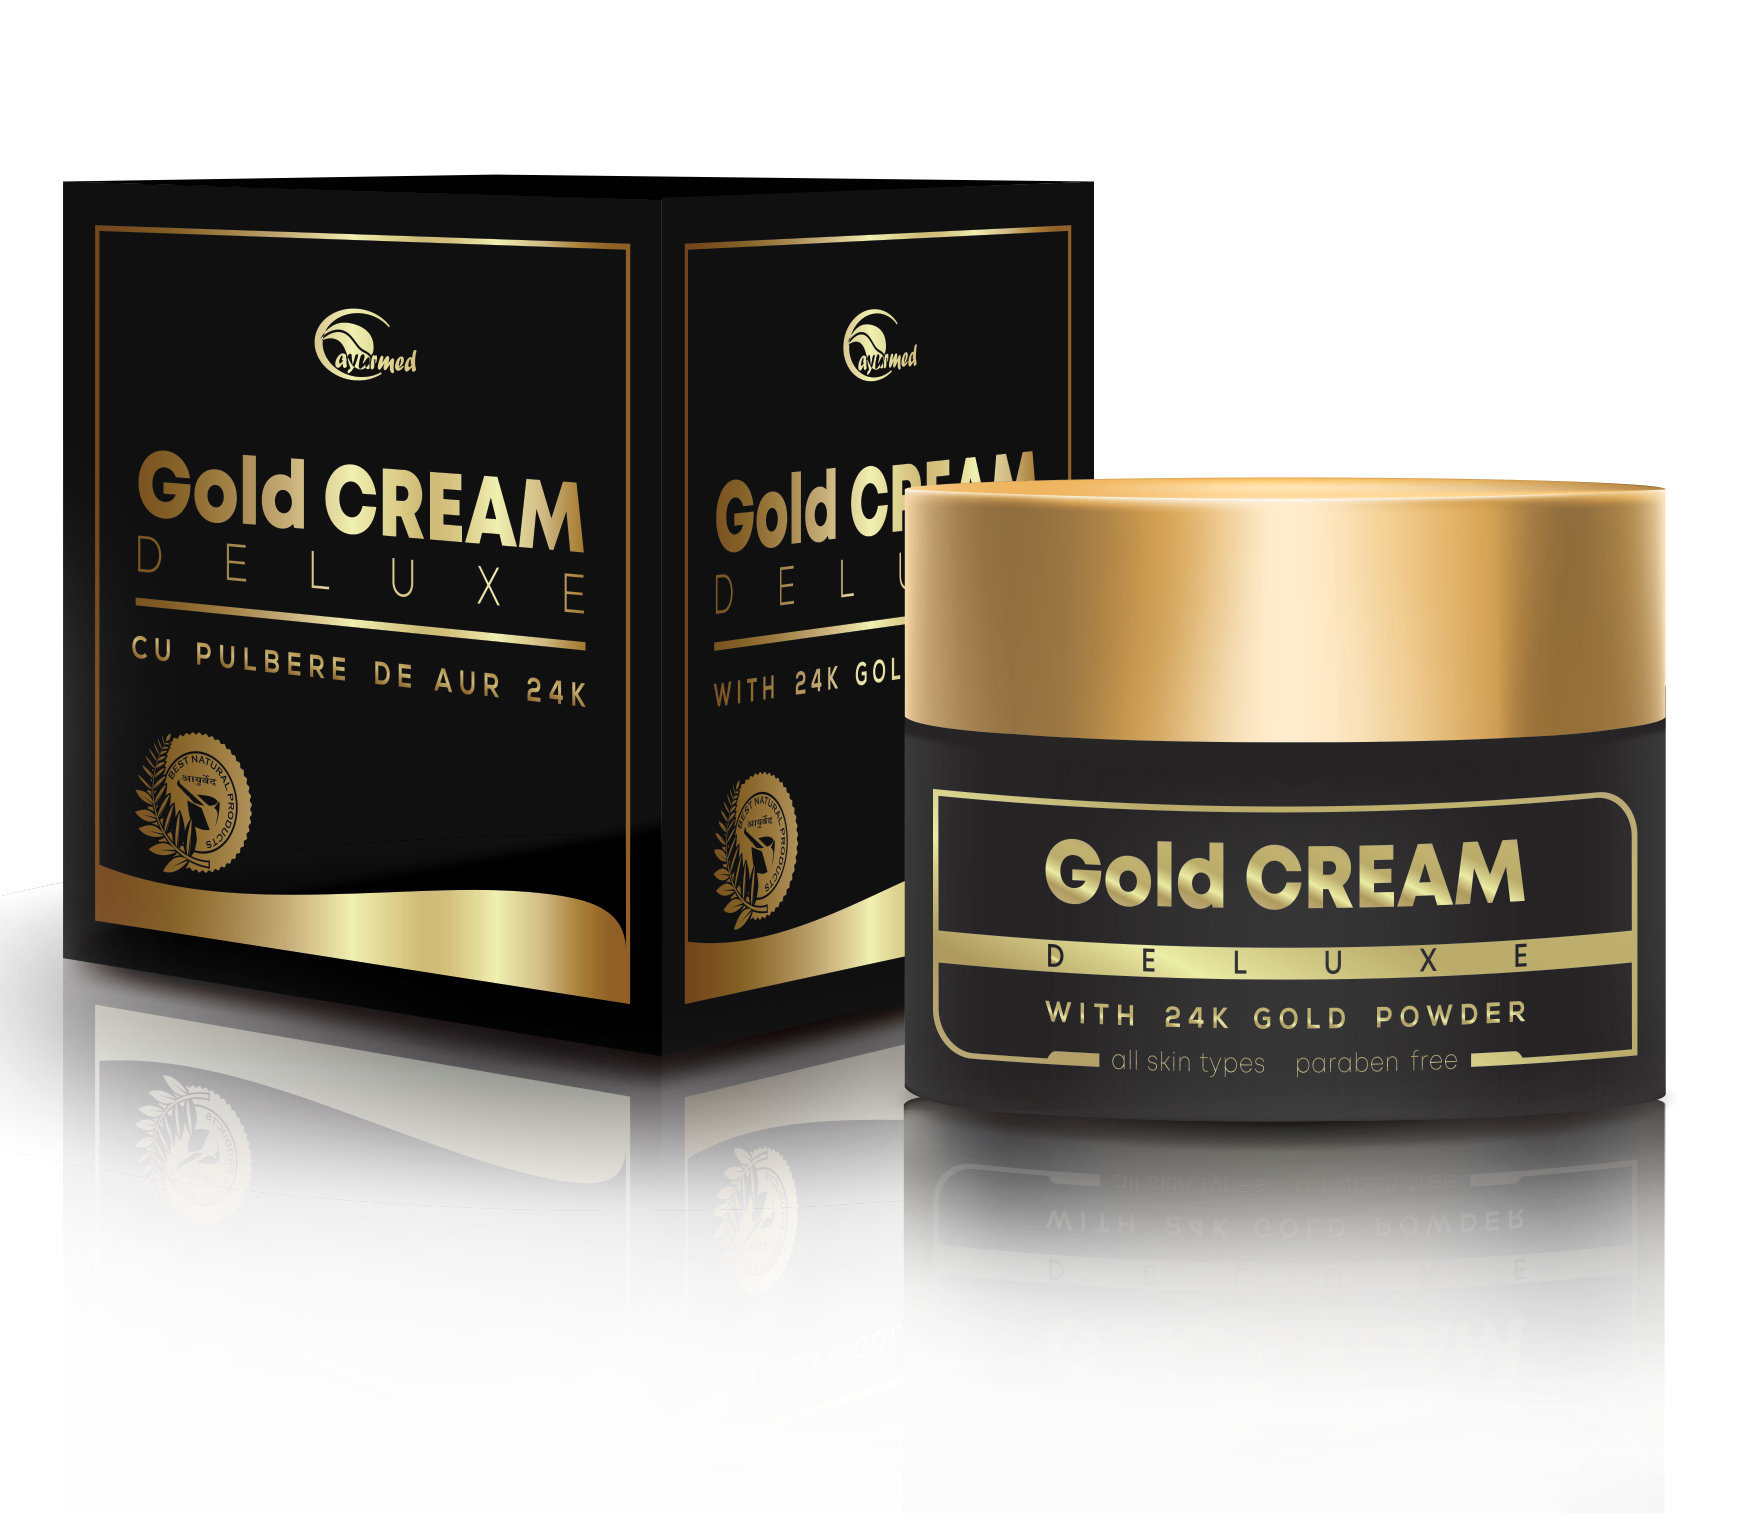 gold cream cu pulbere de aur de 24k